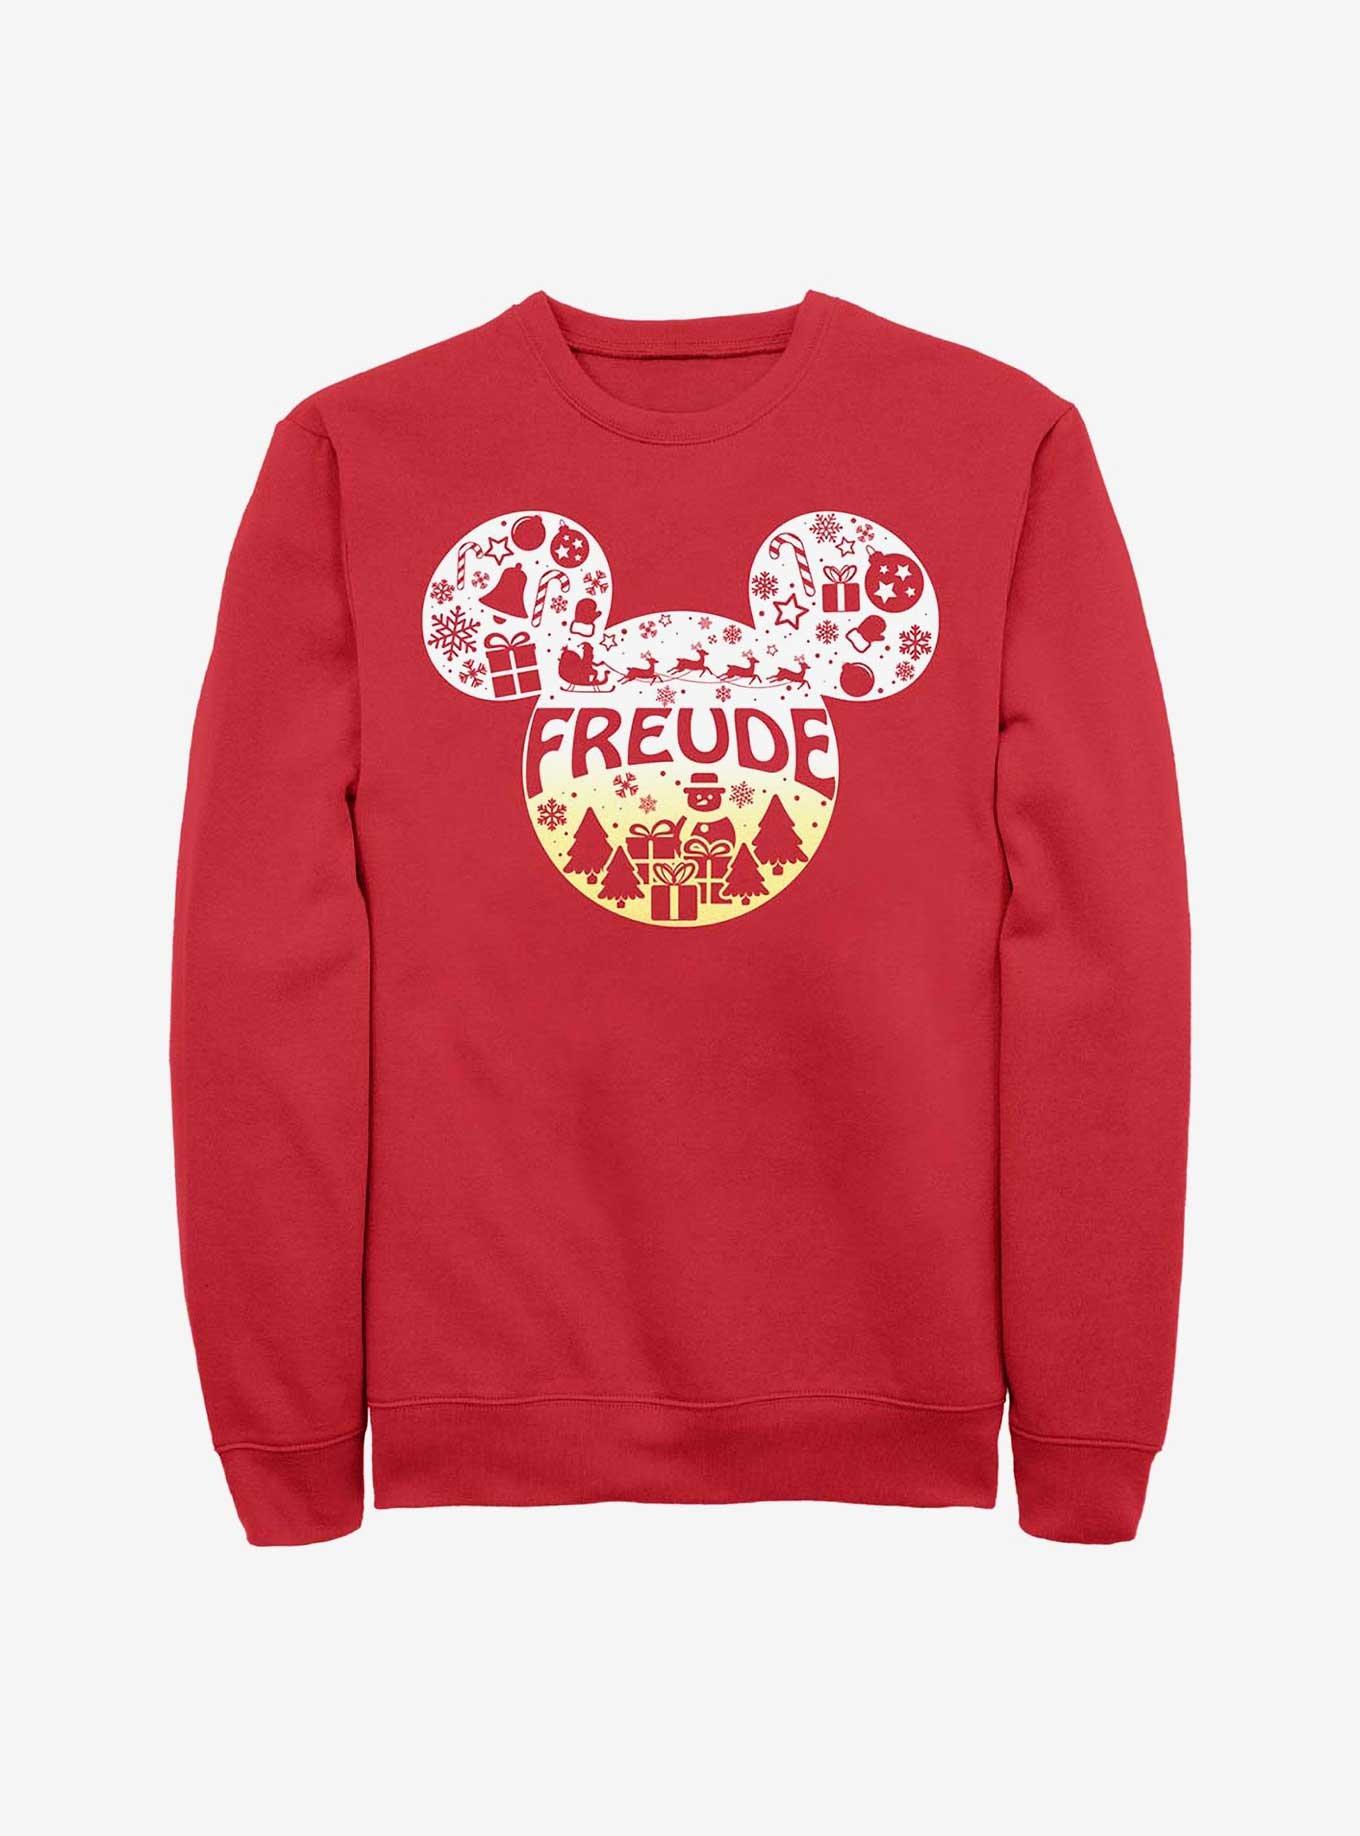 Disney Mickey Mouse Freude Joy German Ears Sweatshirt